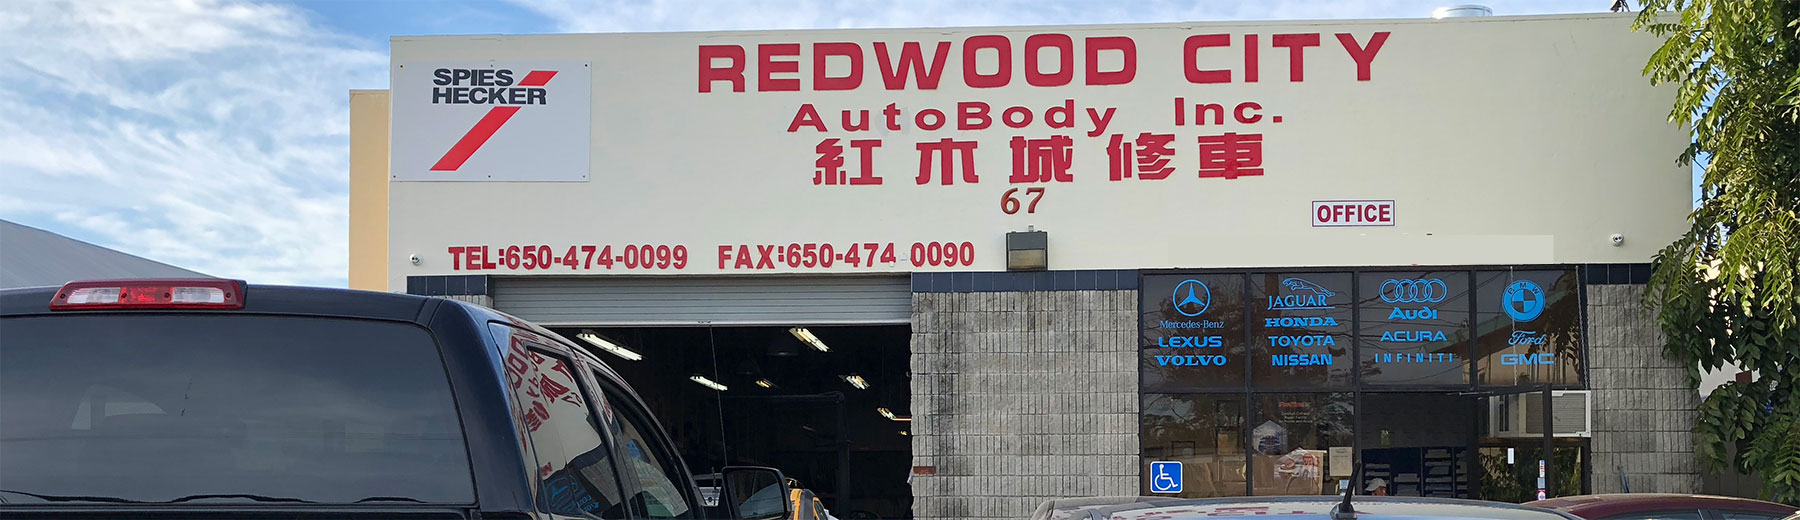 Redwood City Auto Body Inc